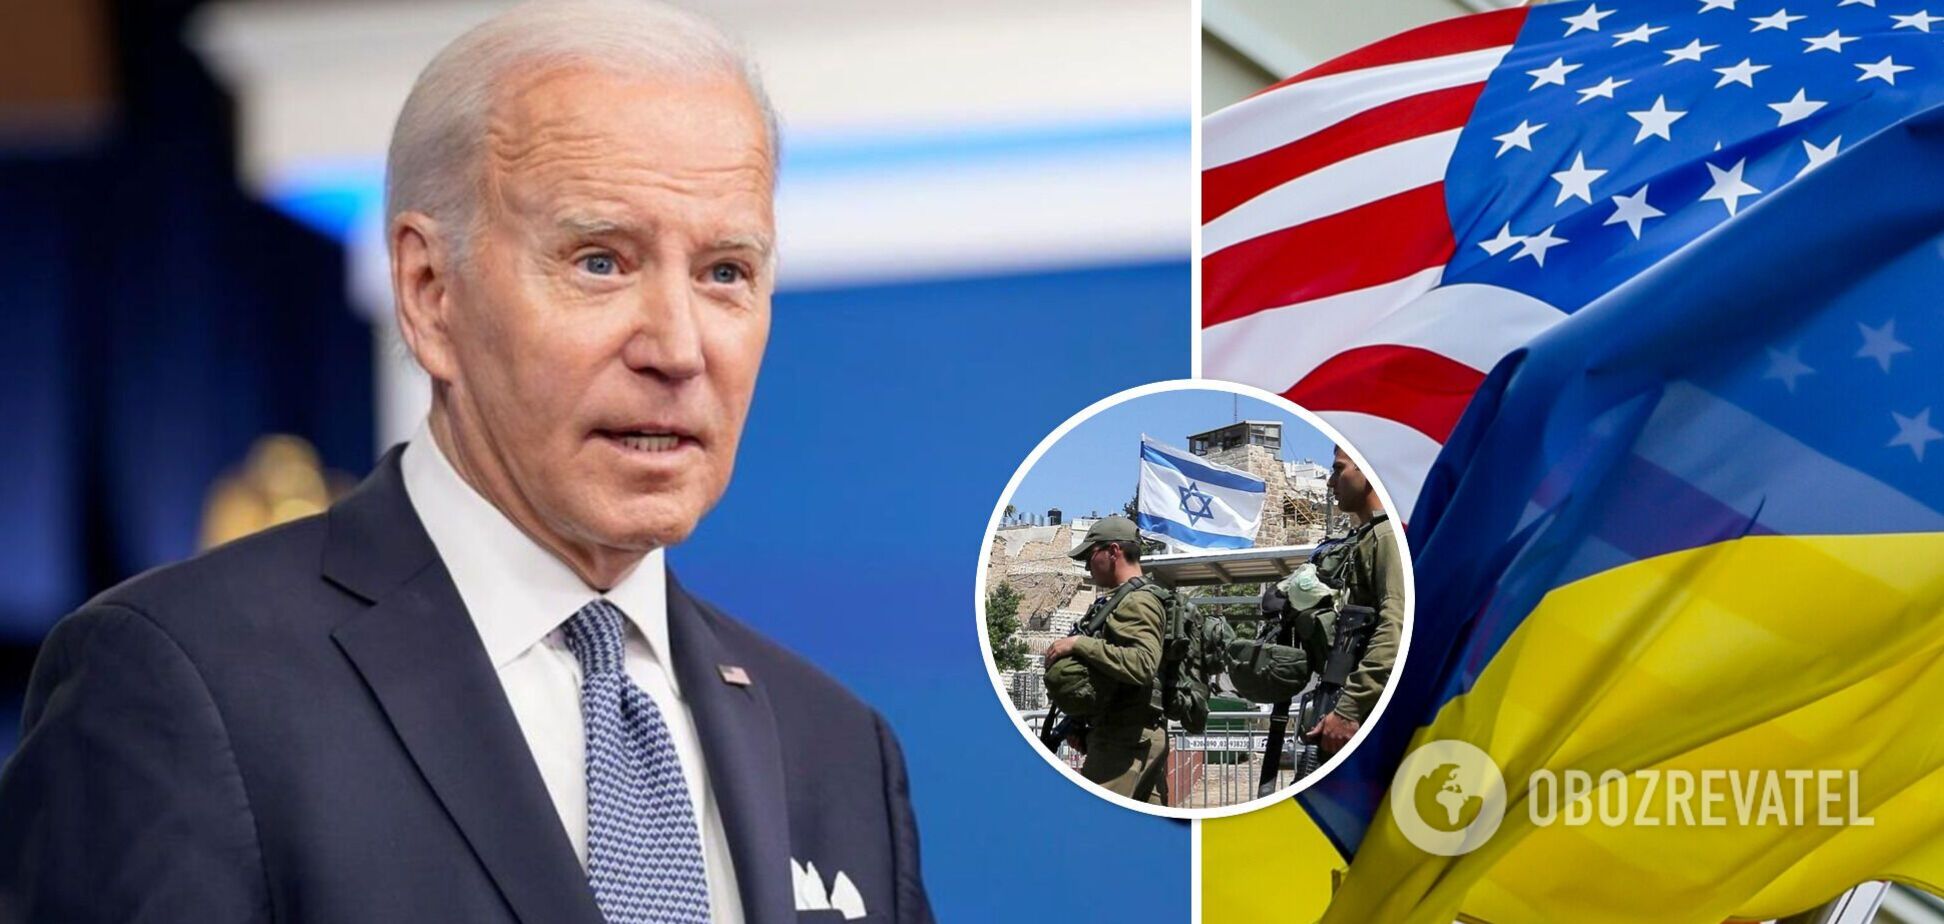 Байден обратится к народу США по поводу войны в Украине и Израиле – Белый дом